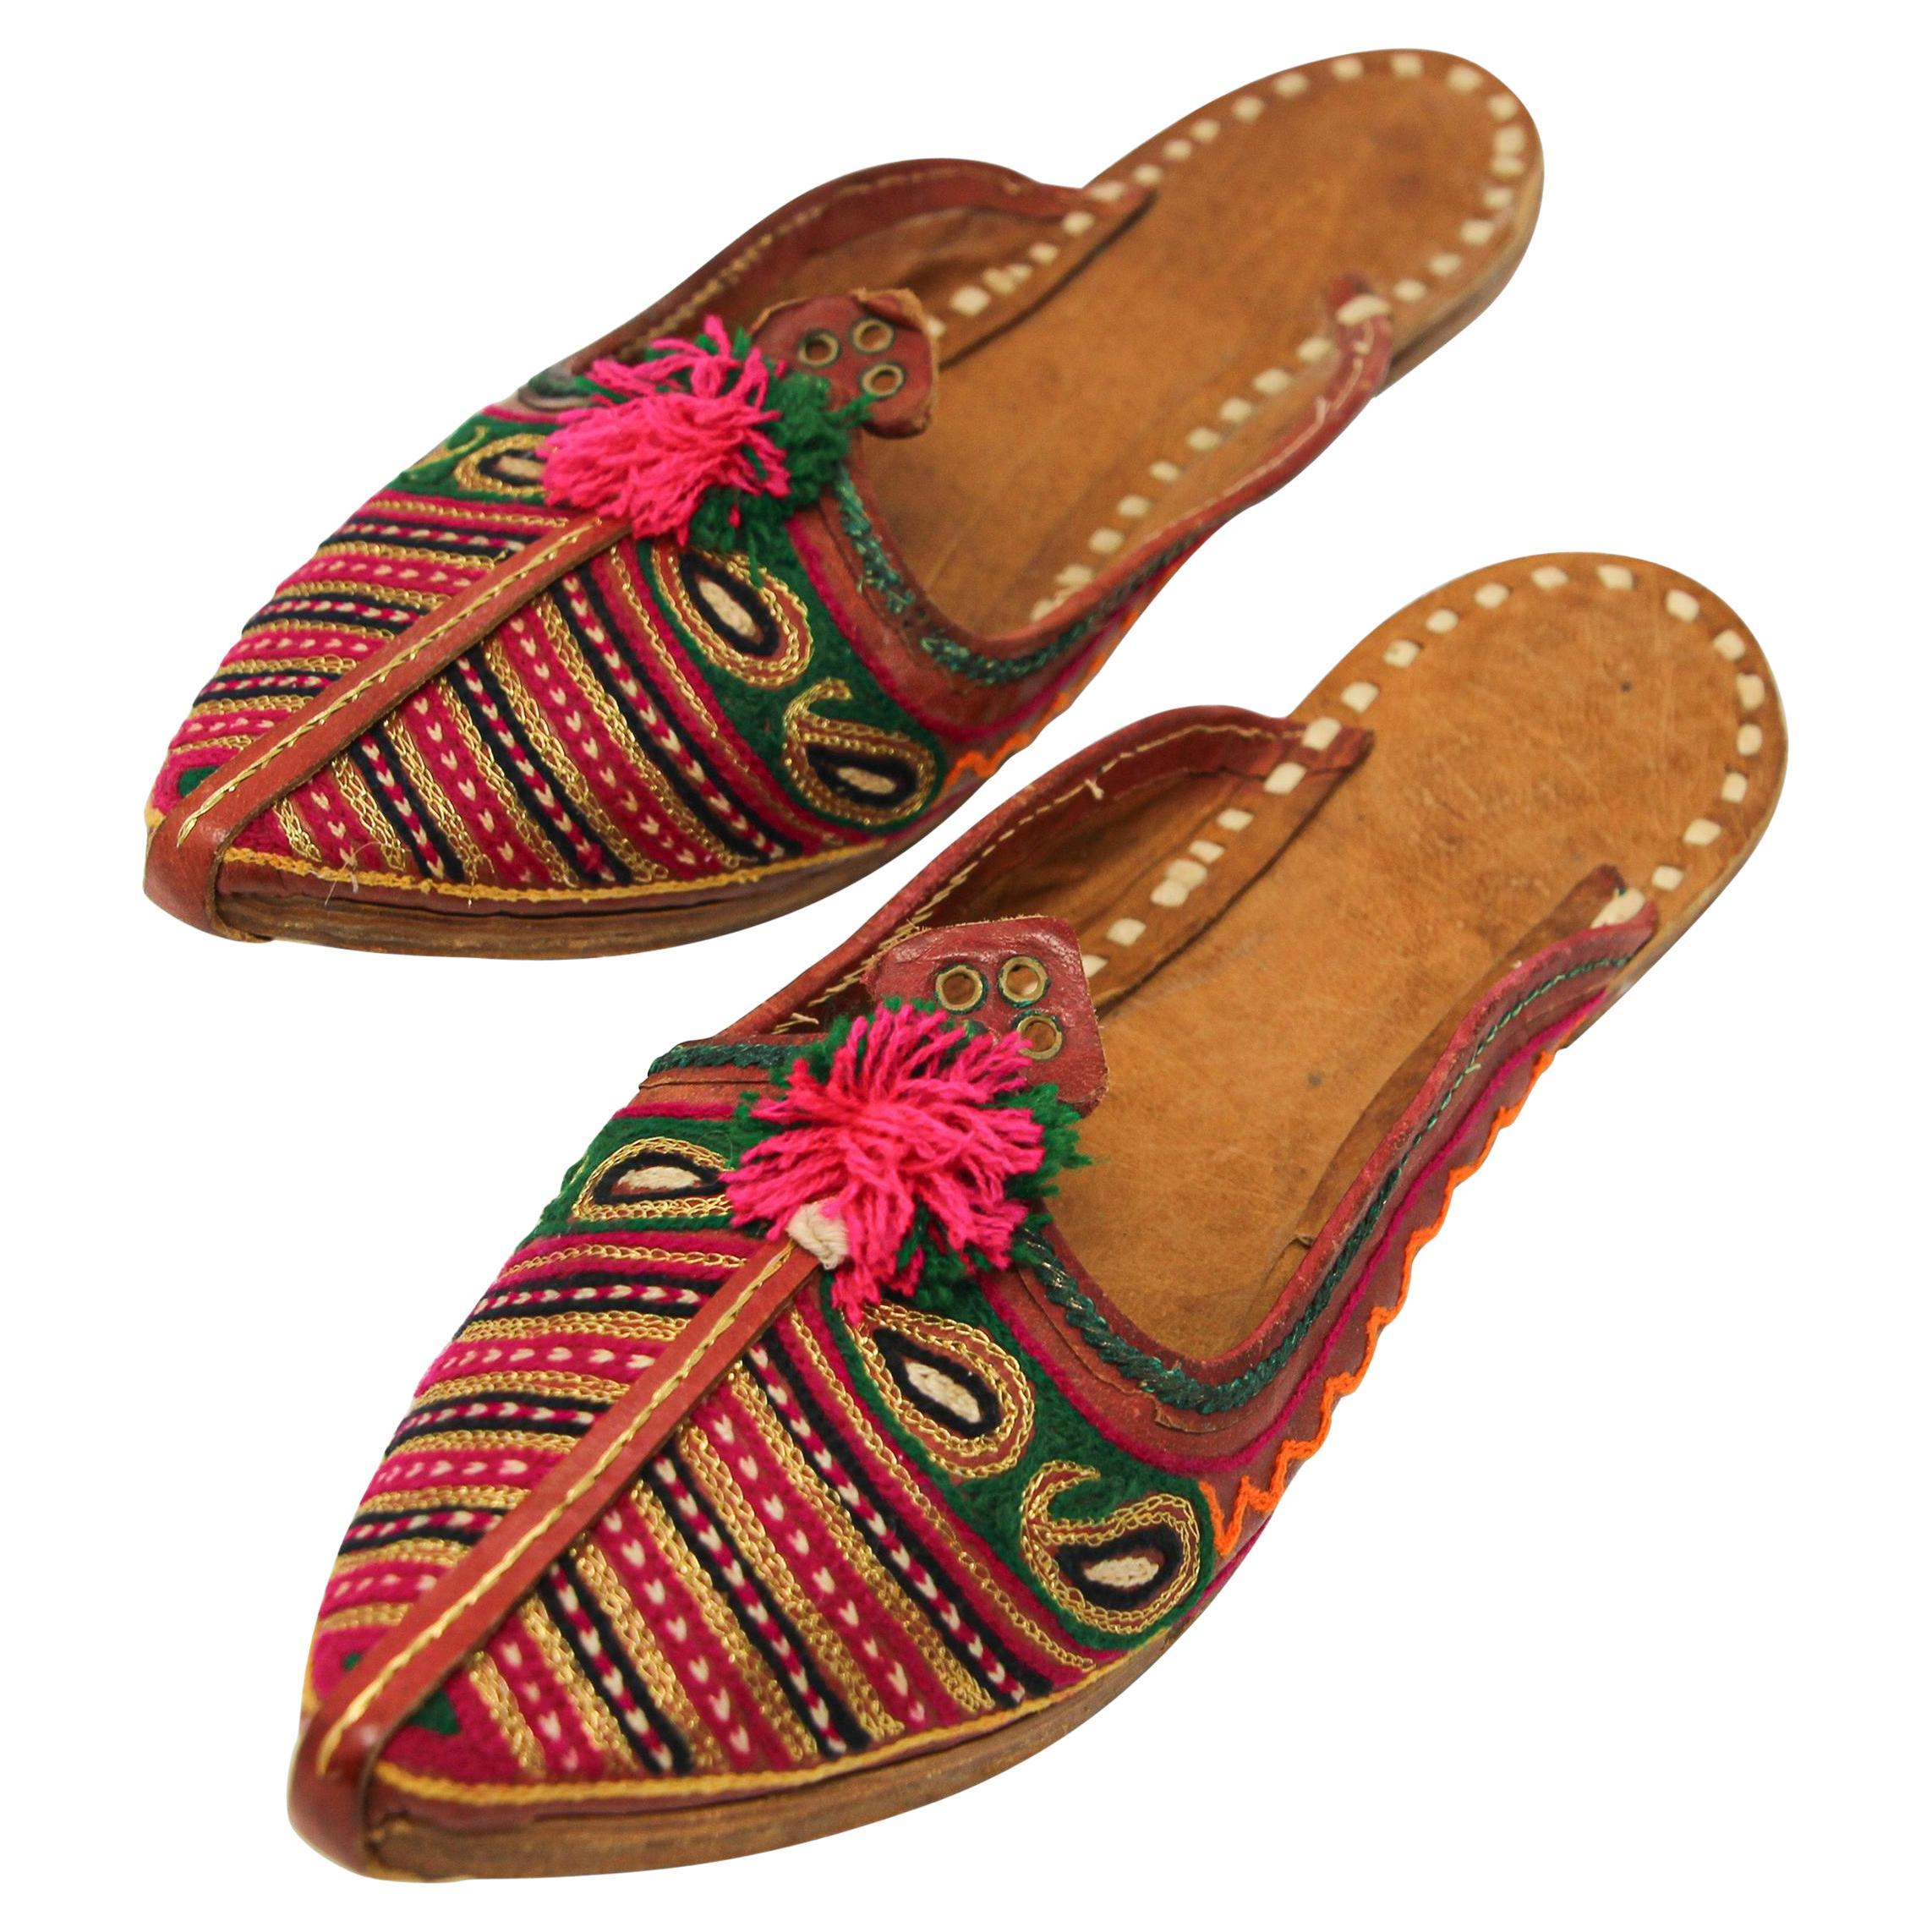 Chaussures ethniques turques brodées en cuir mauresque et dorées à la main, fabrication artisanale en vente